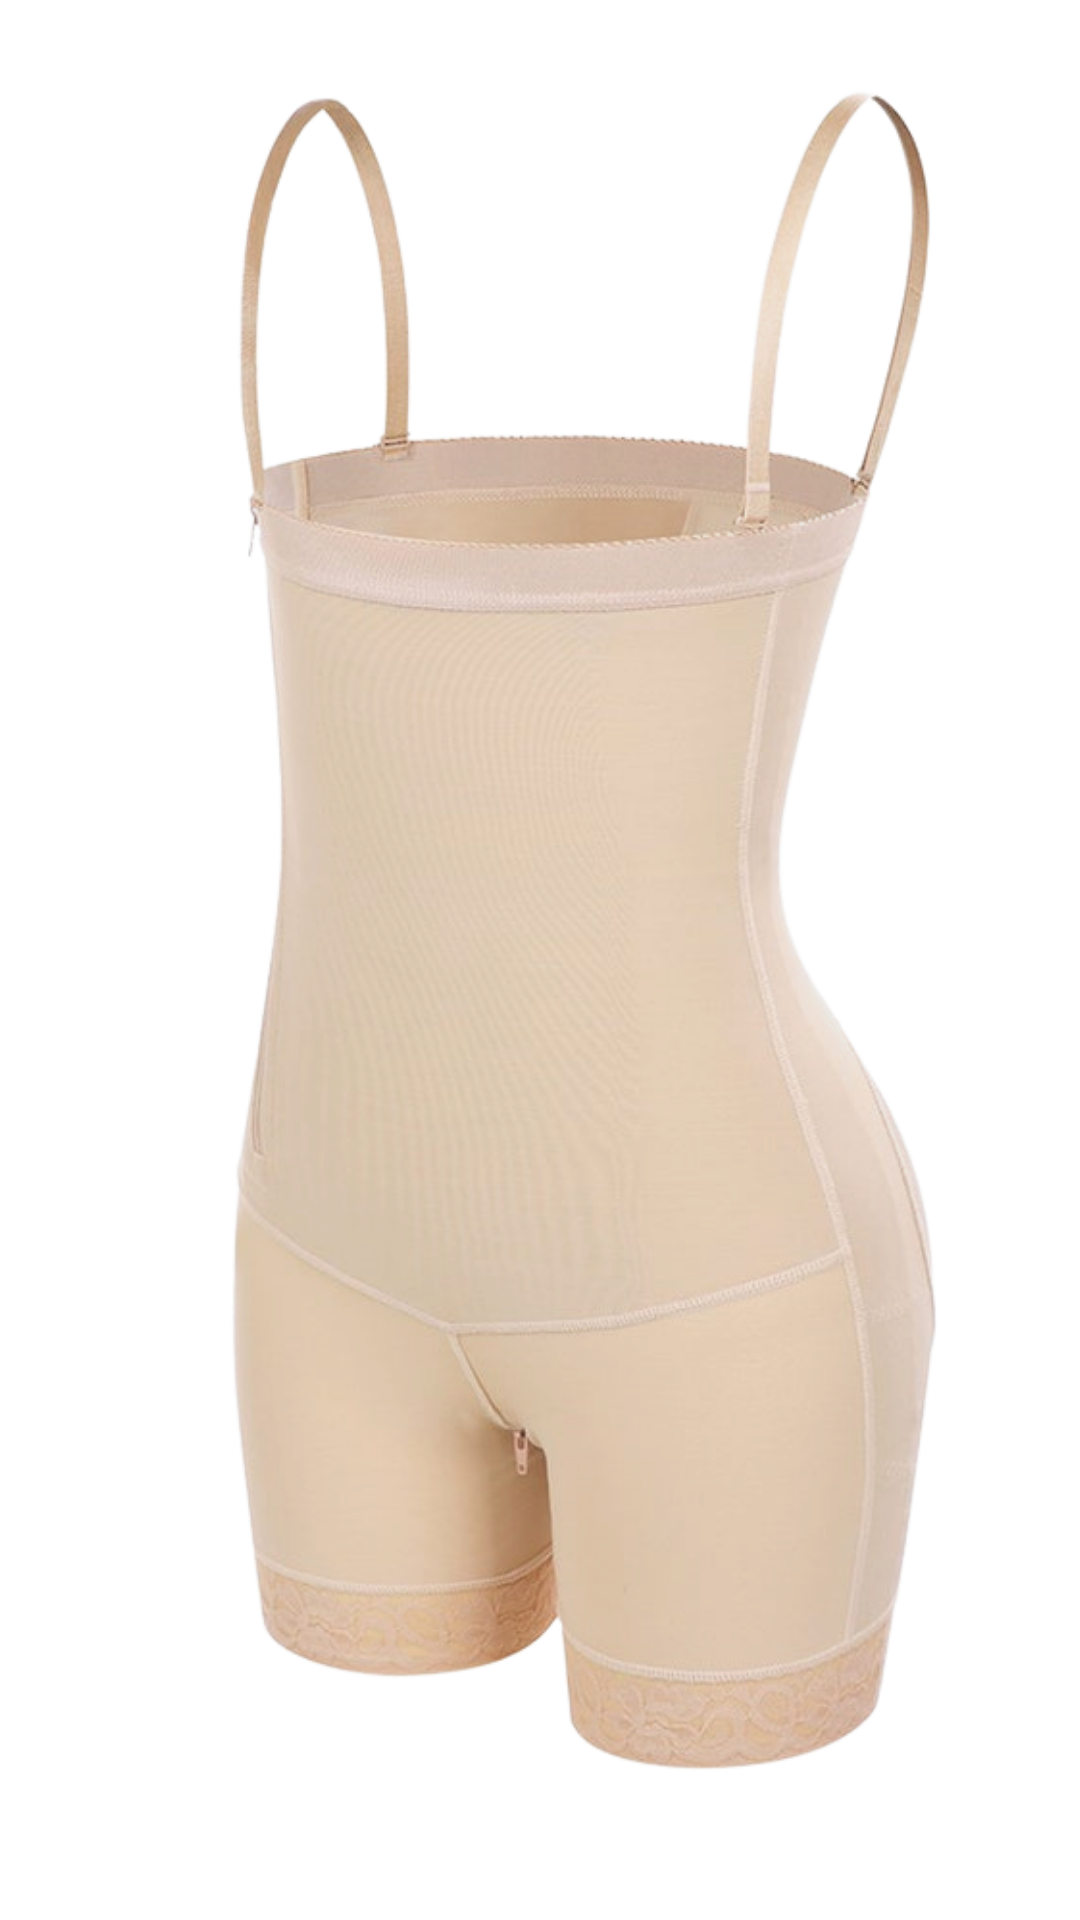 Tummy Control Shapewear Compression Bodysuit - Adjustable Straps – Peachy  Shapewear